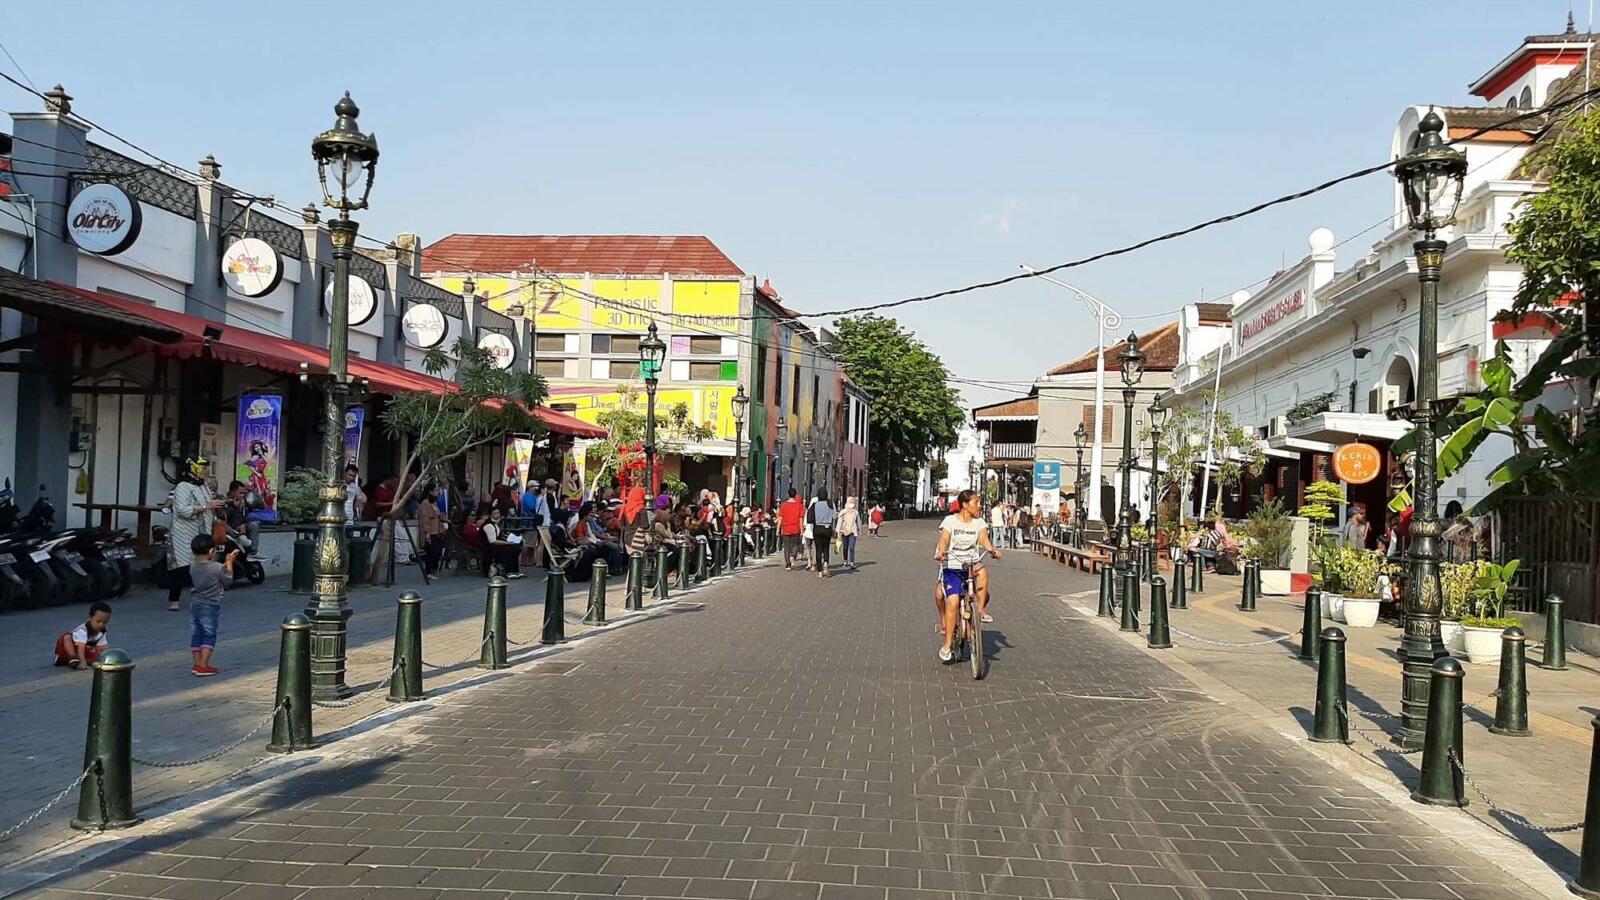 Tempat wisata di Semarang bernuansa Kolonial Kota Lama